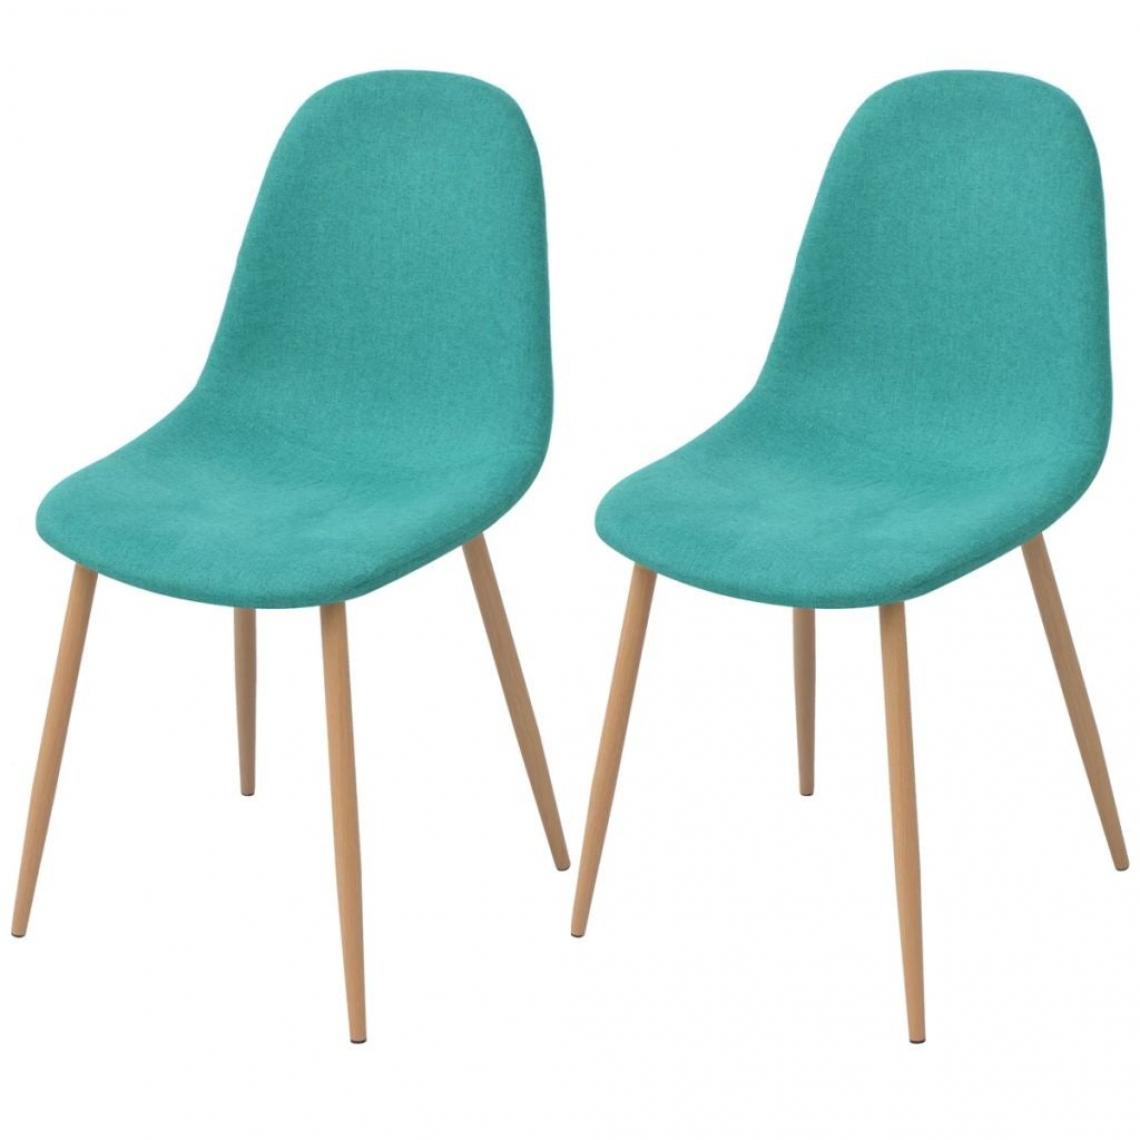 Decoshop26 - Lot de 2 chaises de salle à manger cuisine design moderne tissu vert CDS021108 - Chaises